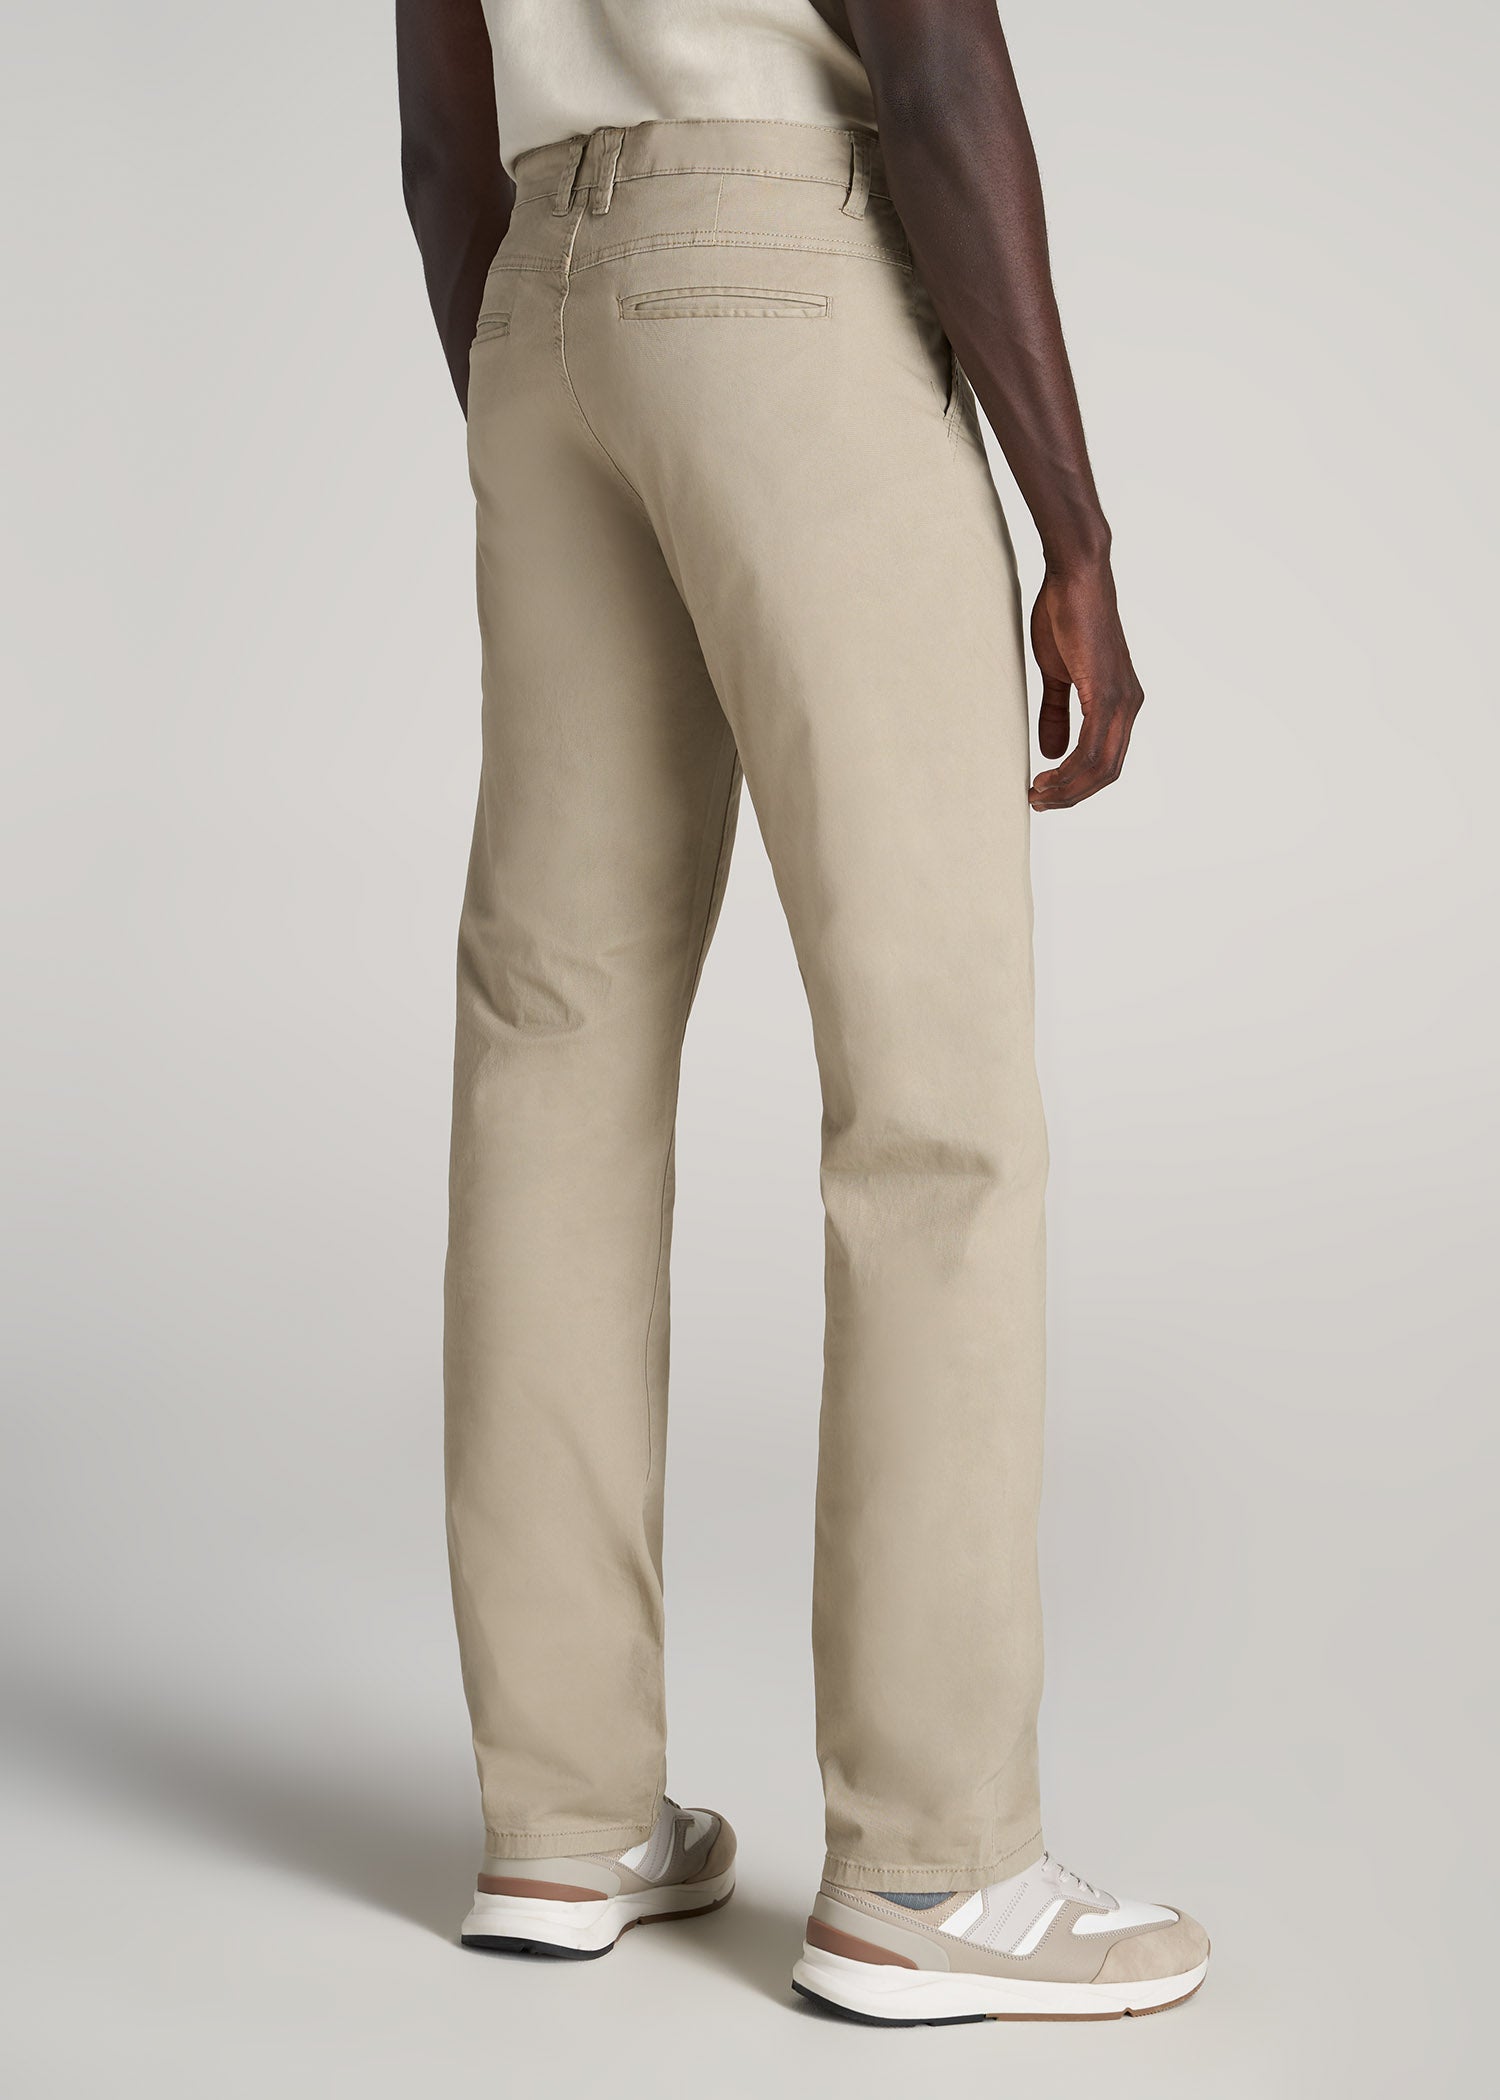 J1 Straight Leg Five Pocket Khaki Pants For Tall Men